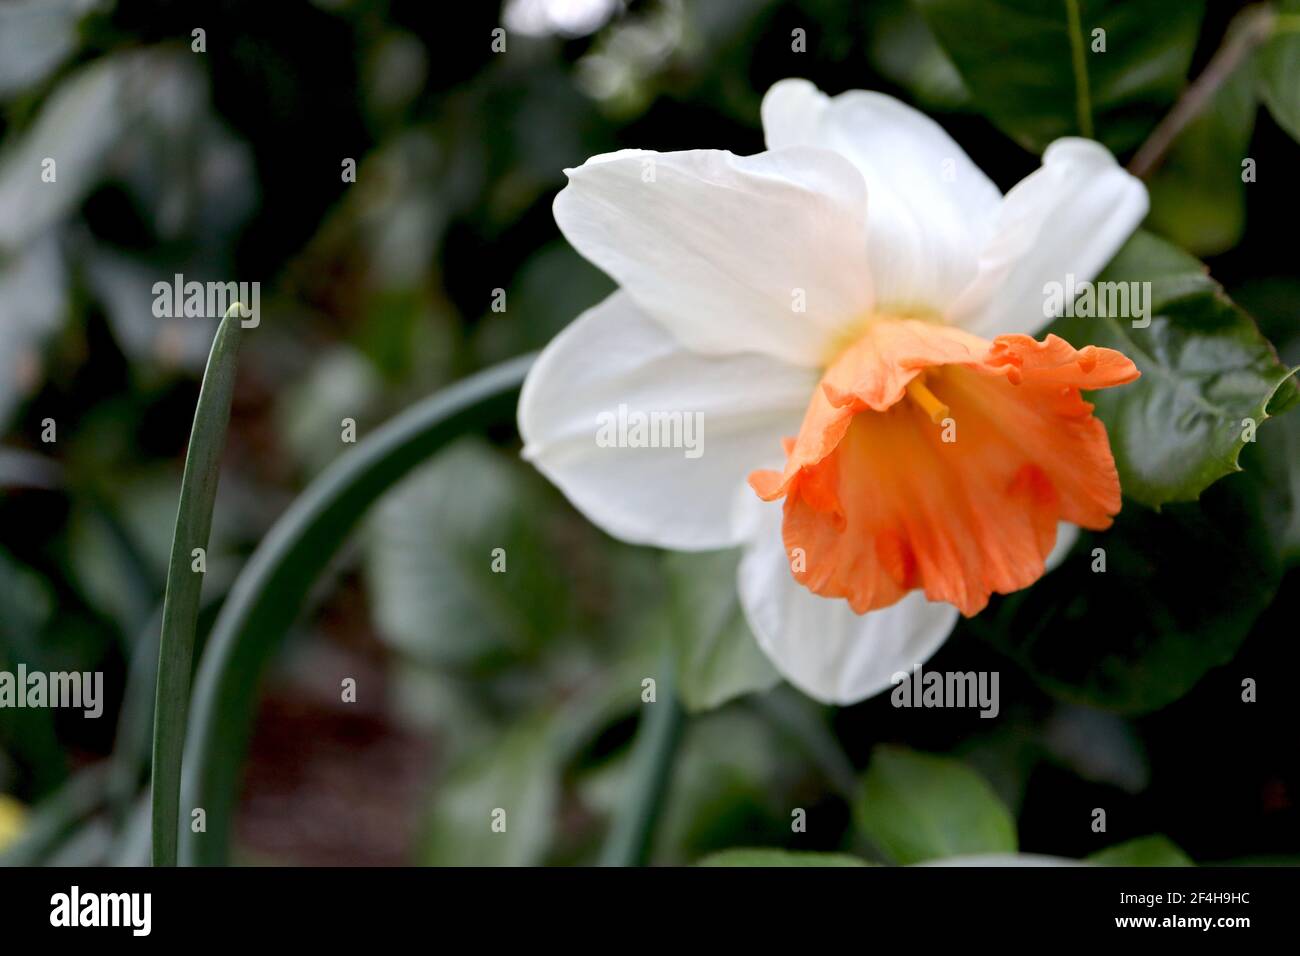 Narcissus «Decoy» Division 2 jonquilles à grandes tasses Decoy jondil - pétales blancs et coupe évasée orange profonde, mars, Angleterre, Royaume-Uni Banque D'Images